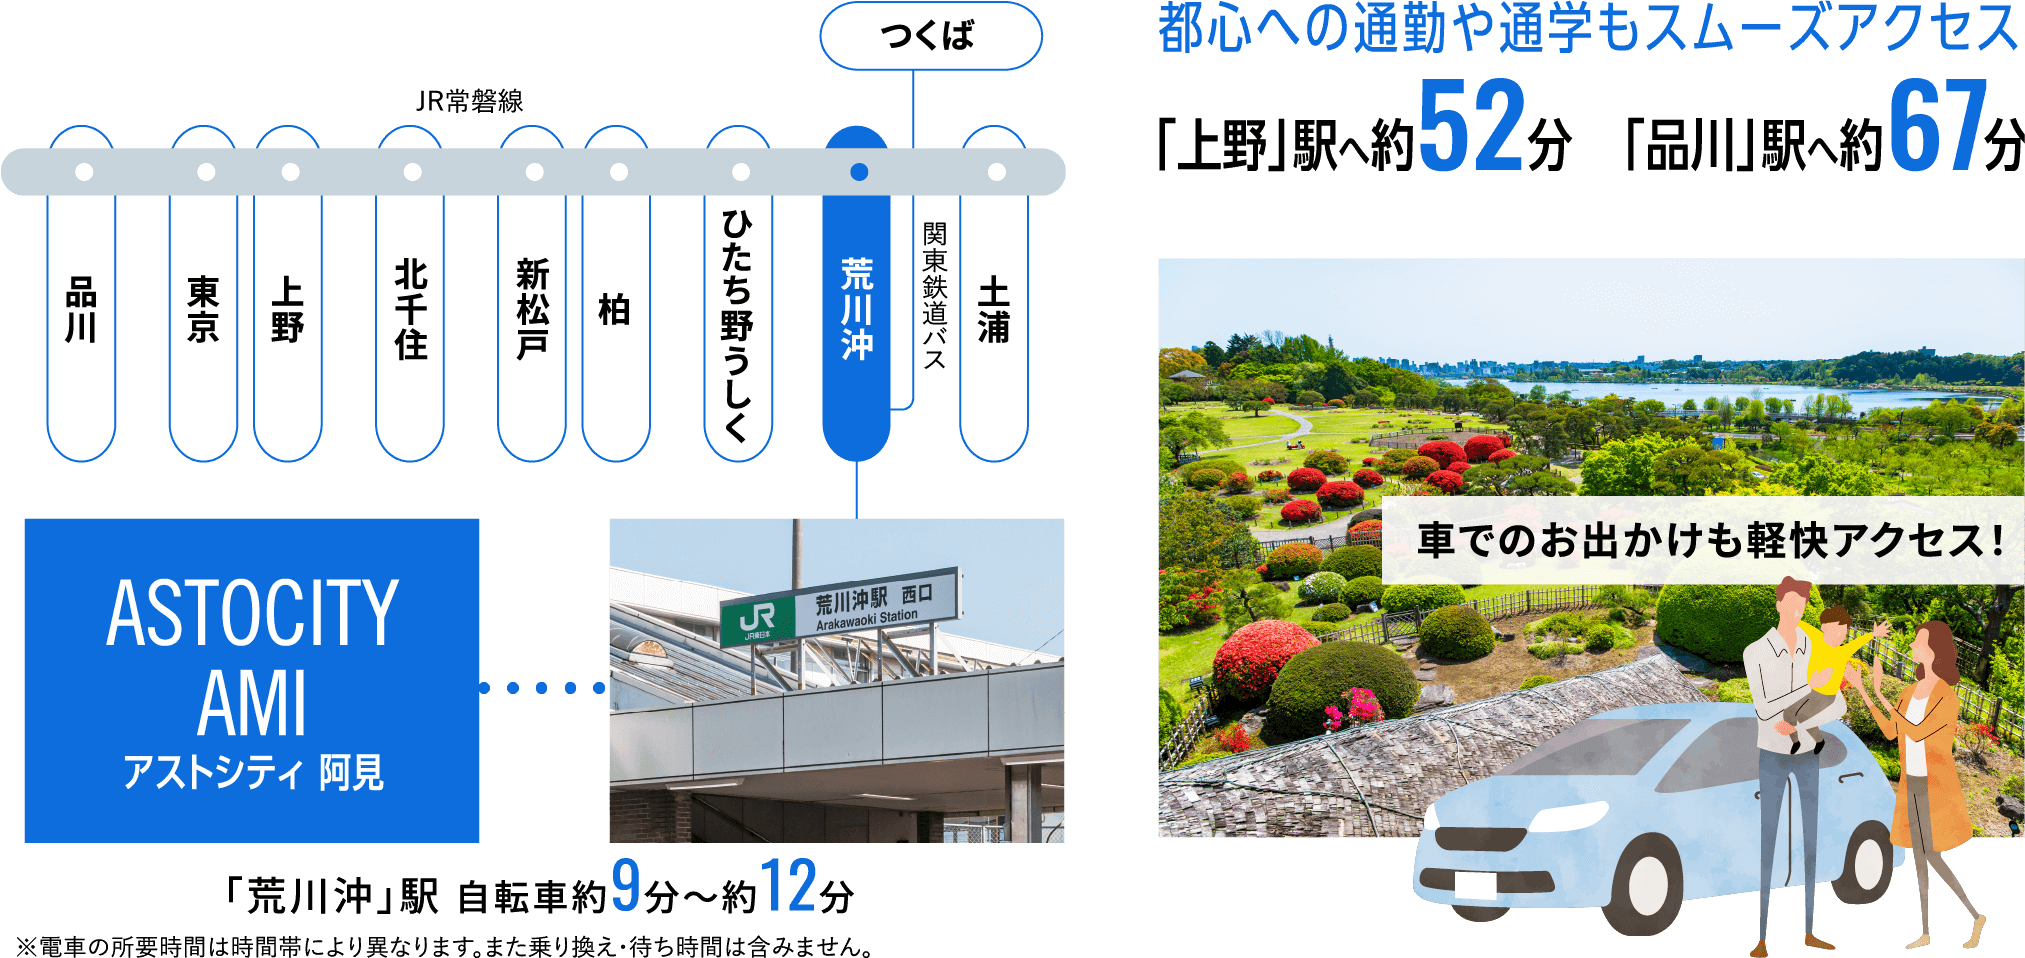 都心への通勤や通学もスムーズアクセス「上野」駅へ約52分「品川」駅へ約67分